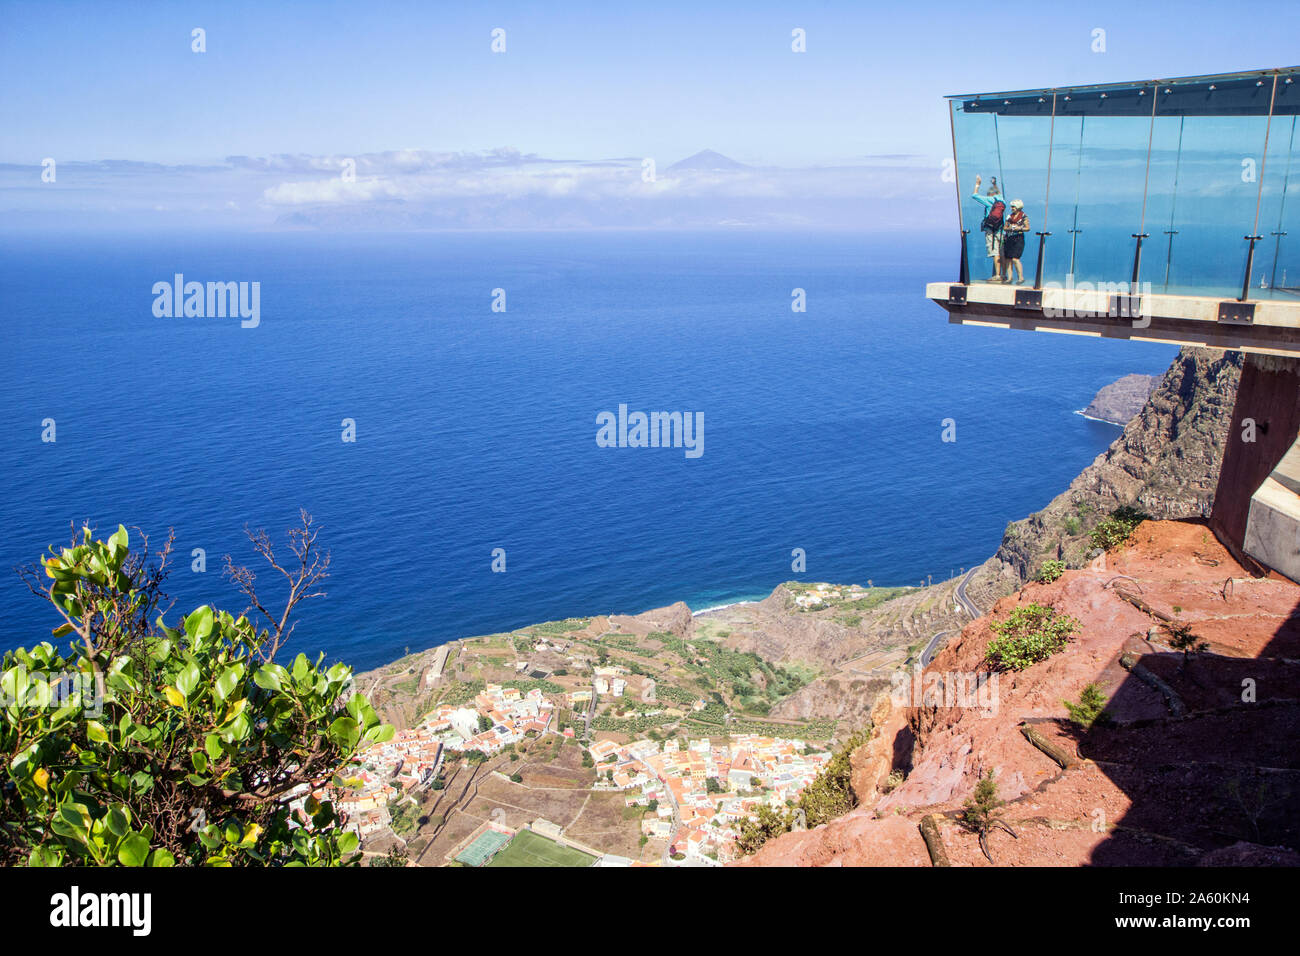 Tourists at Mirador de Abrante viewing platform, La Gomera, Canary Islands, Spain Stock Photo